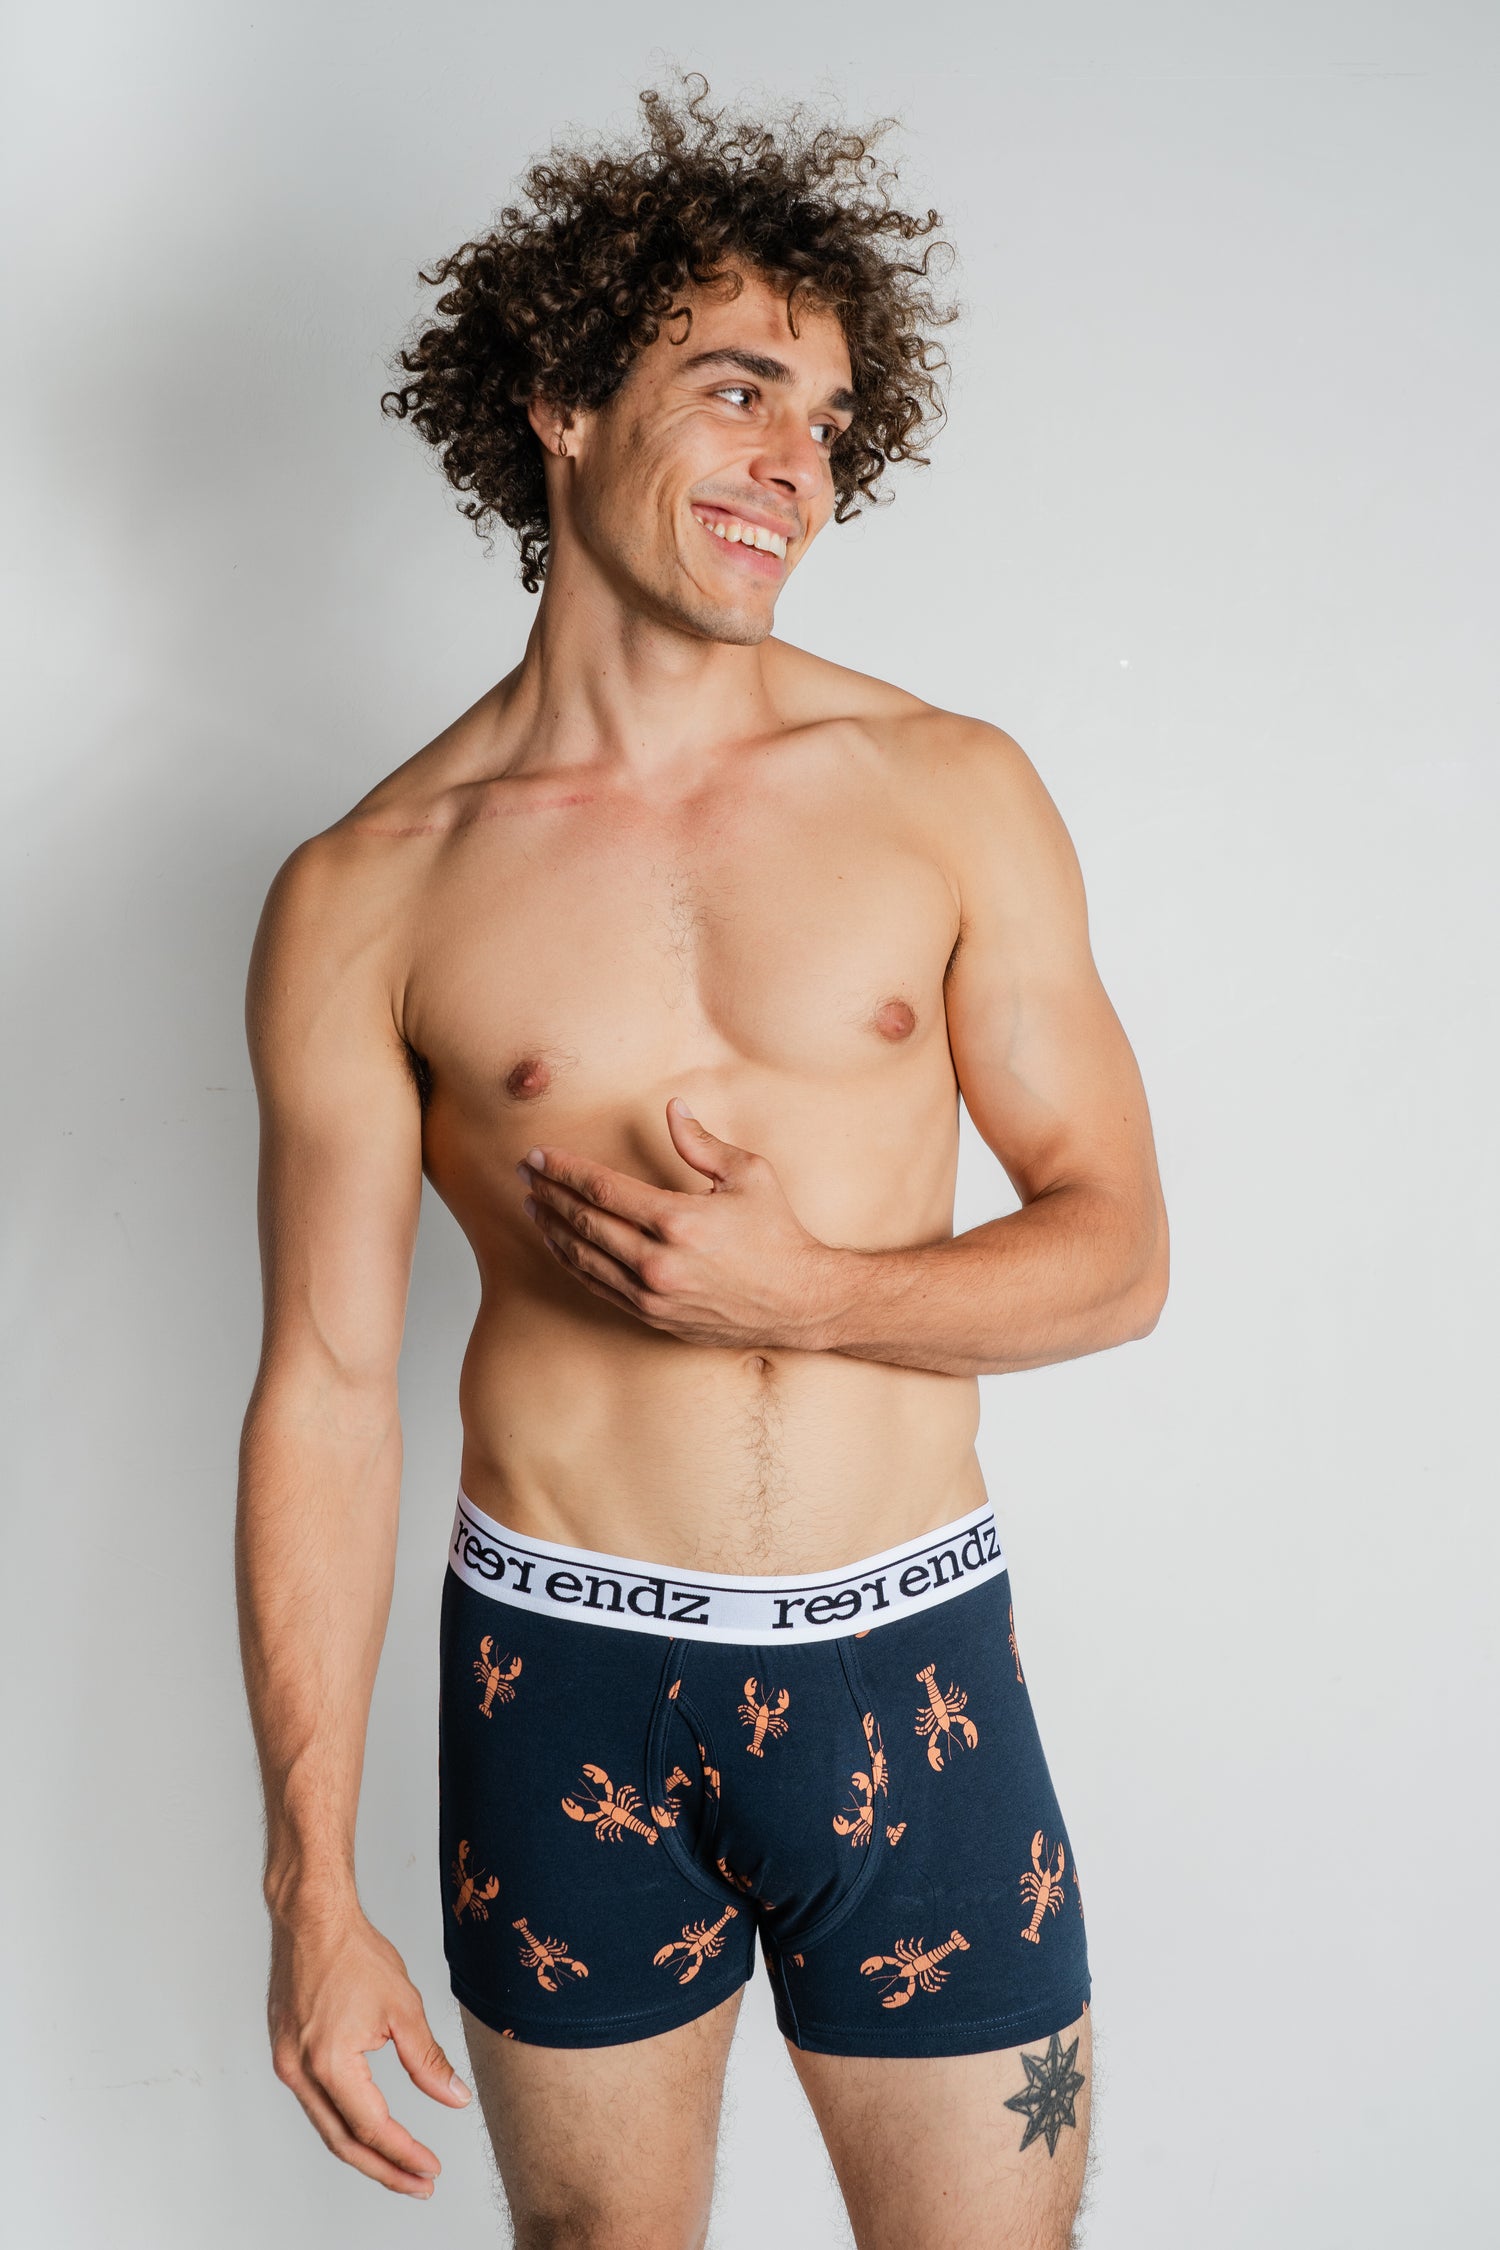 Men's underwear australia. Crafted from Organic cotton. Eco friendly men's undies